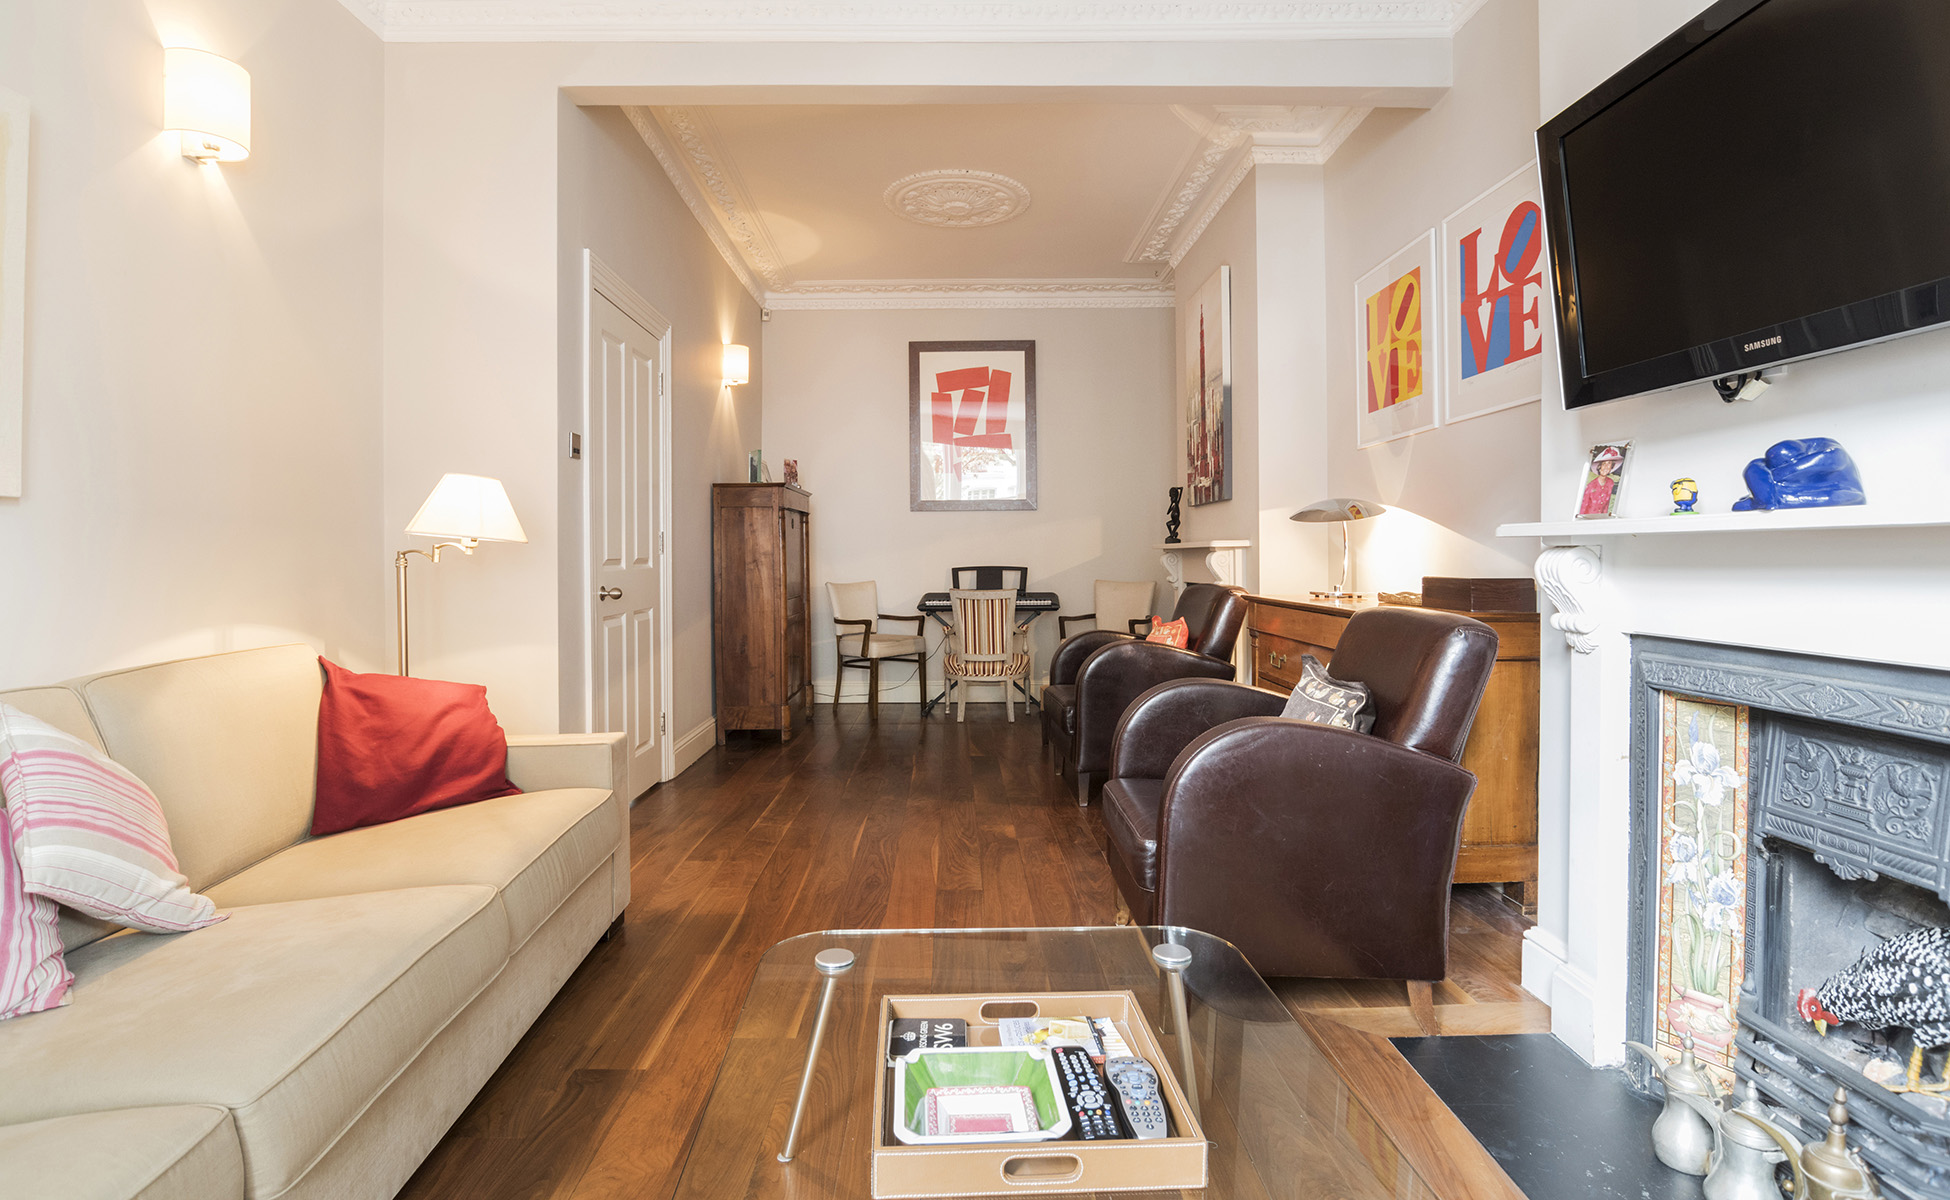 Lovelydays luxury service apartment rental - London - Fulham - Gironde road - Lovelysuite - 4 bedrooms - 2 bathrooms - Luxury living room - 3dab174e7282 - Lovelydays